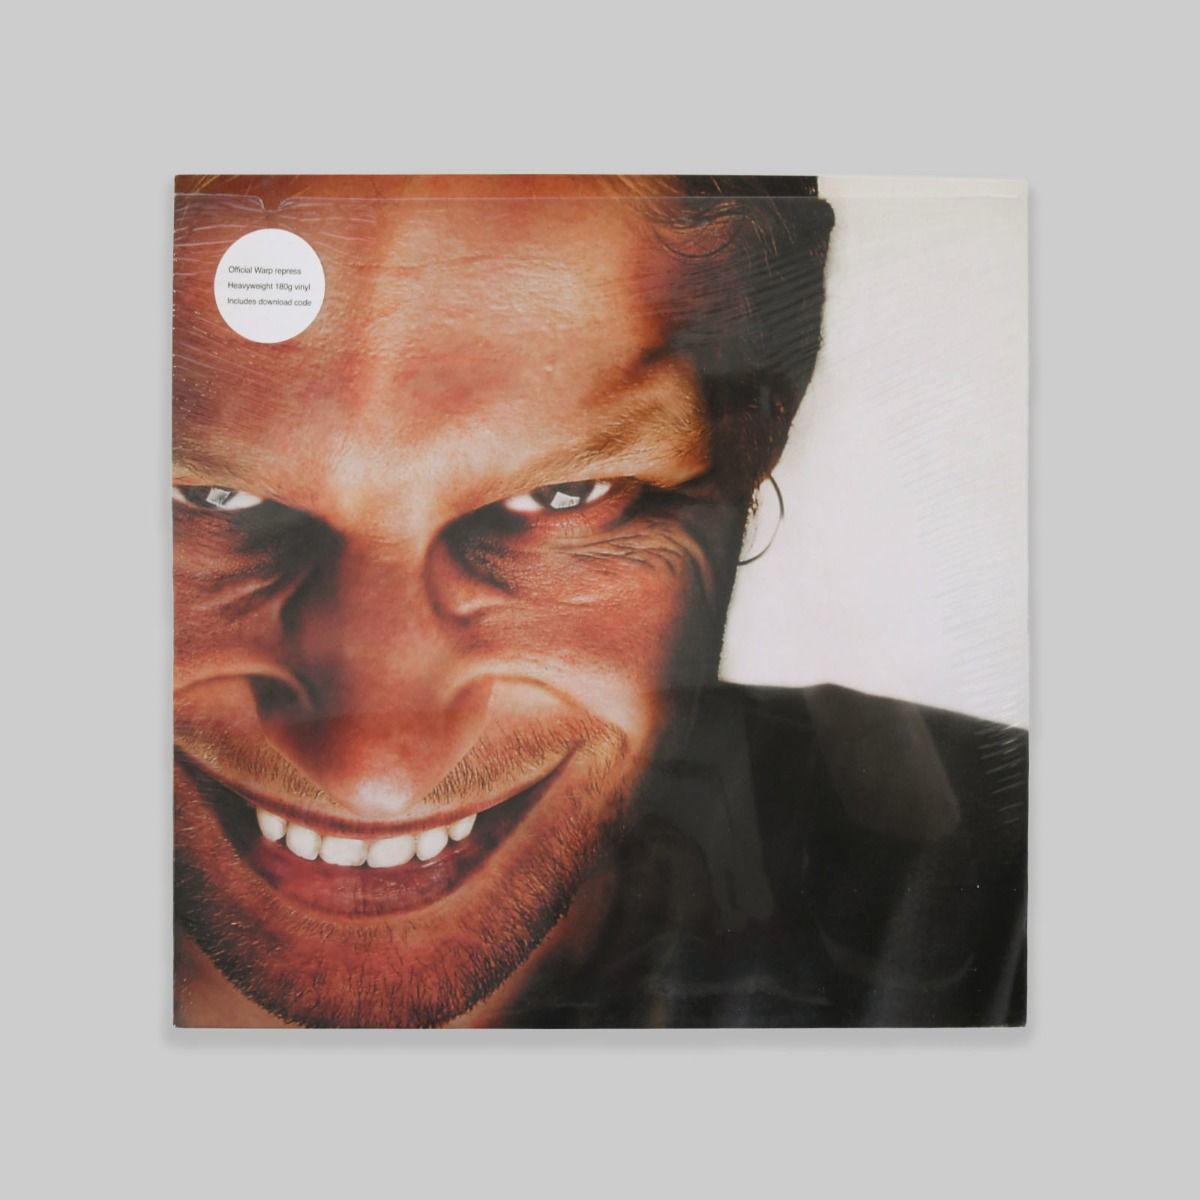 Aphex Twin – Richard D. James Album 12" LP